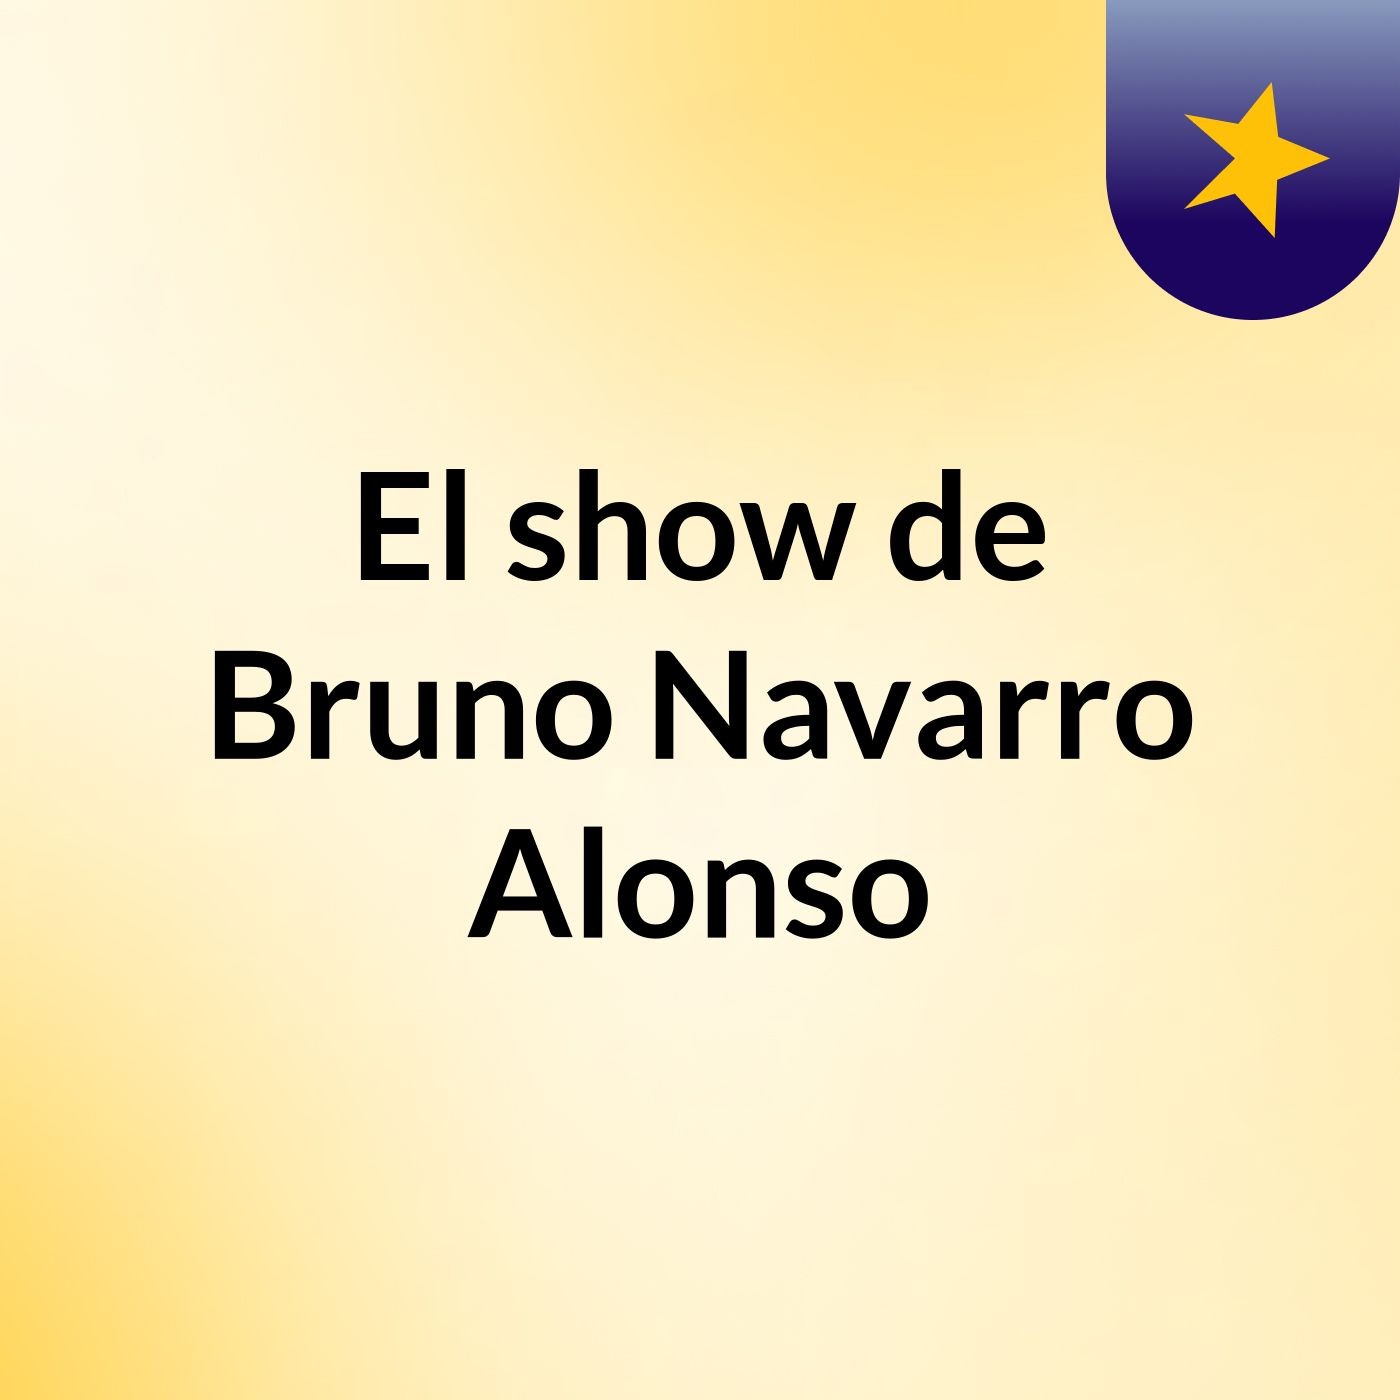 El show de Bruno Navarro Alonso